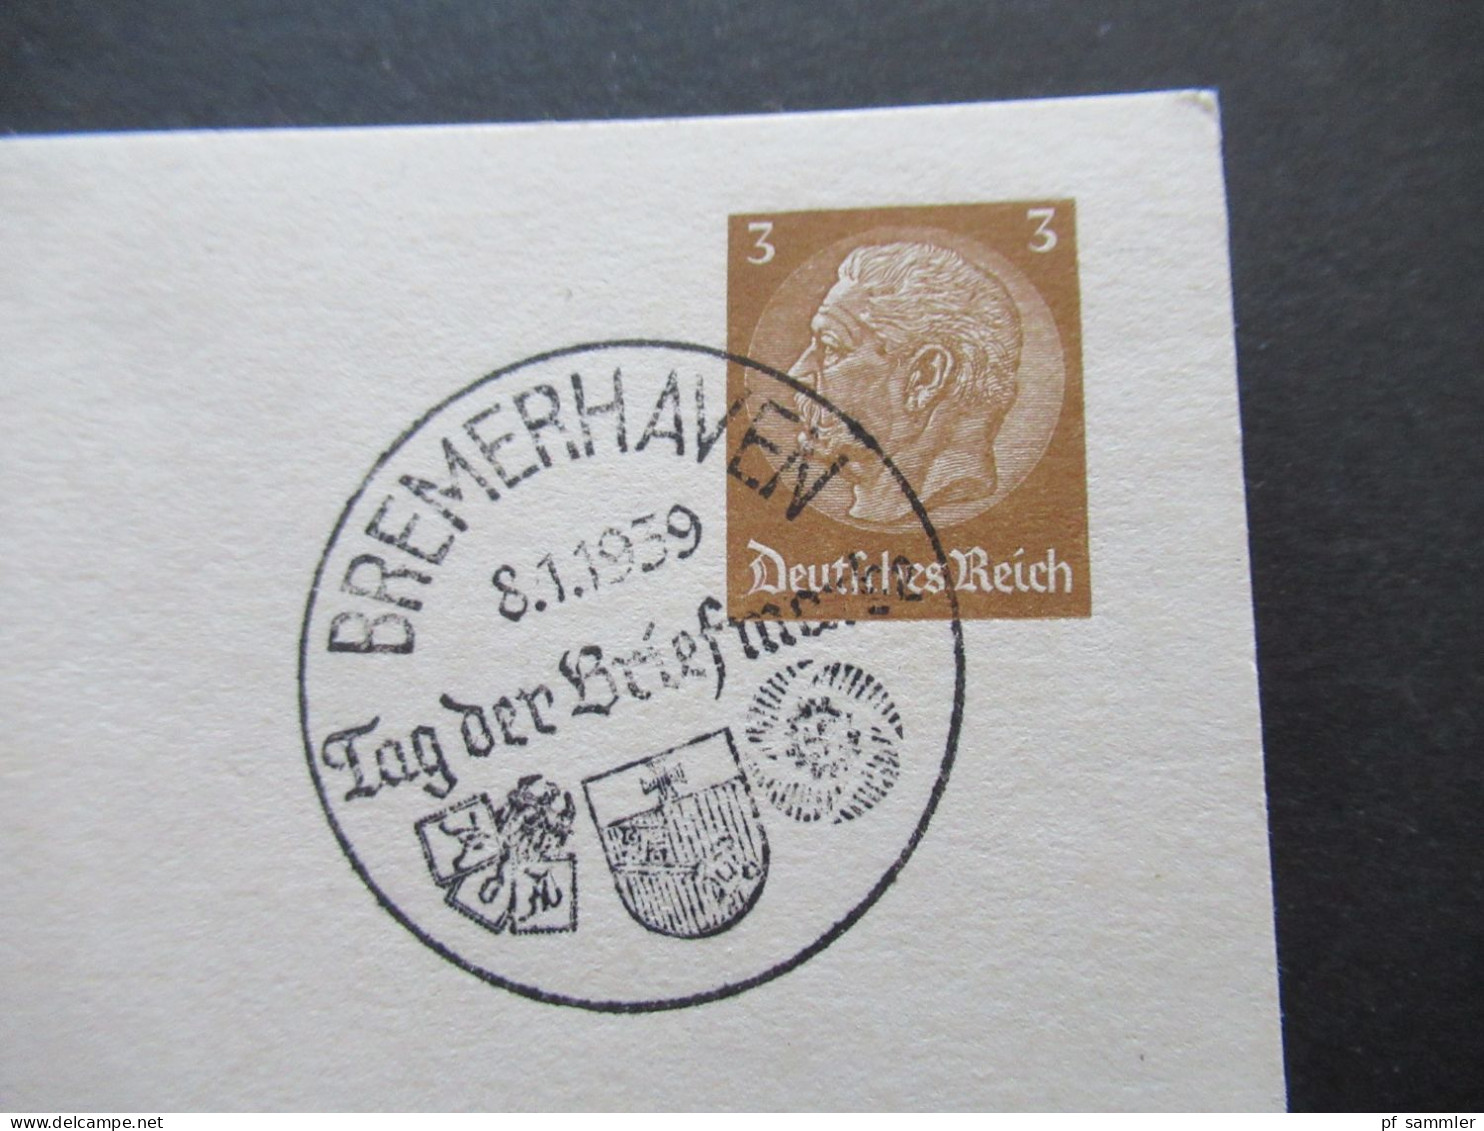 1939 Tag Der Briefmarke Sonder PK P 239 / 01 Mit Sonderstempel Bremerhaven Tag Der Briefmarke Reichsbund Der Philatelist - Postkarten